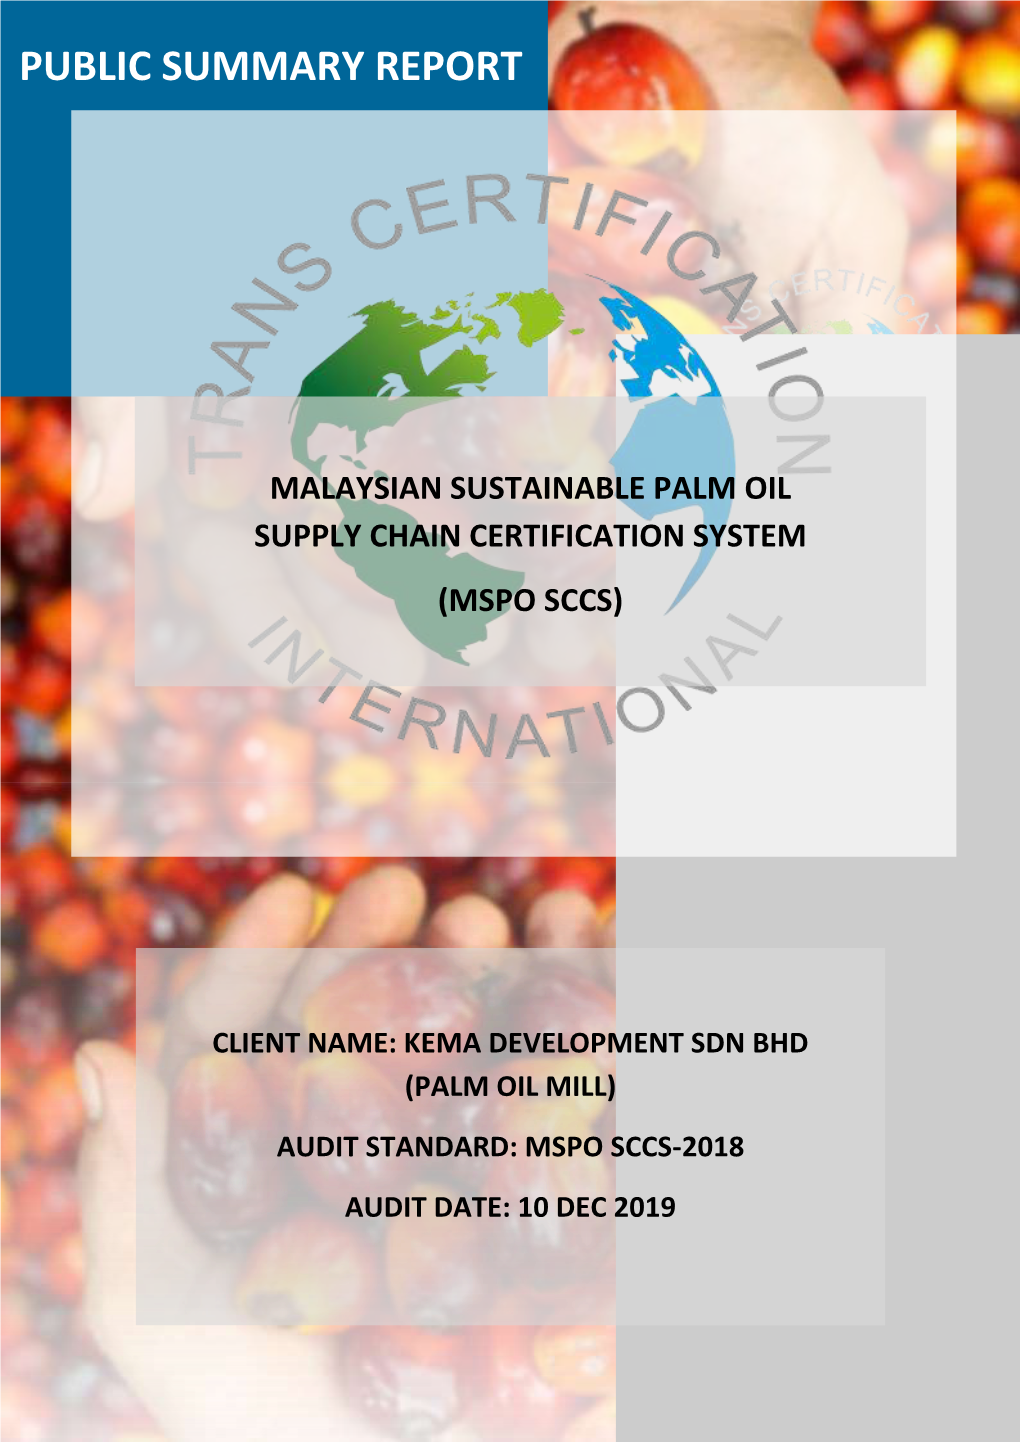 Kema Development Sdn Bhd (Palm Oil Mill) Audit Standard: Mspo Sccs-2018 Audit Date: 10 Dec 2019